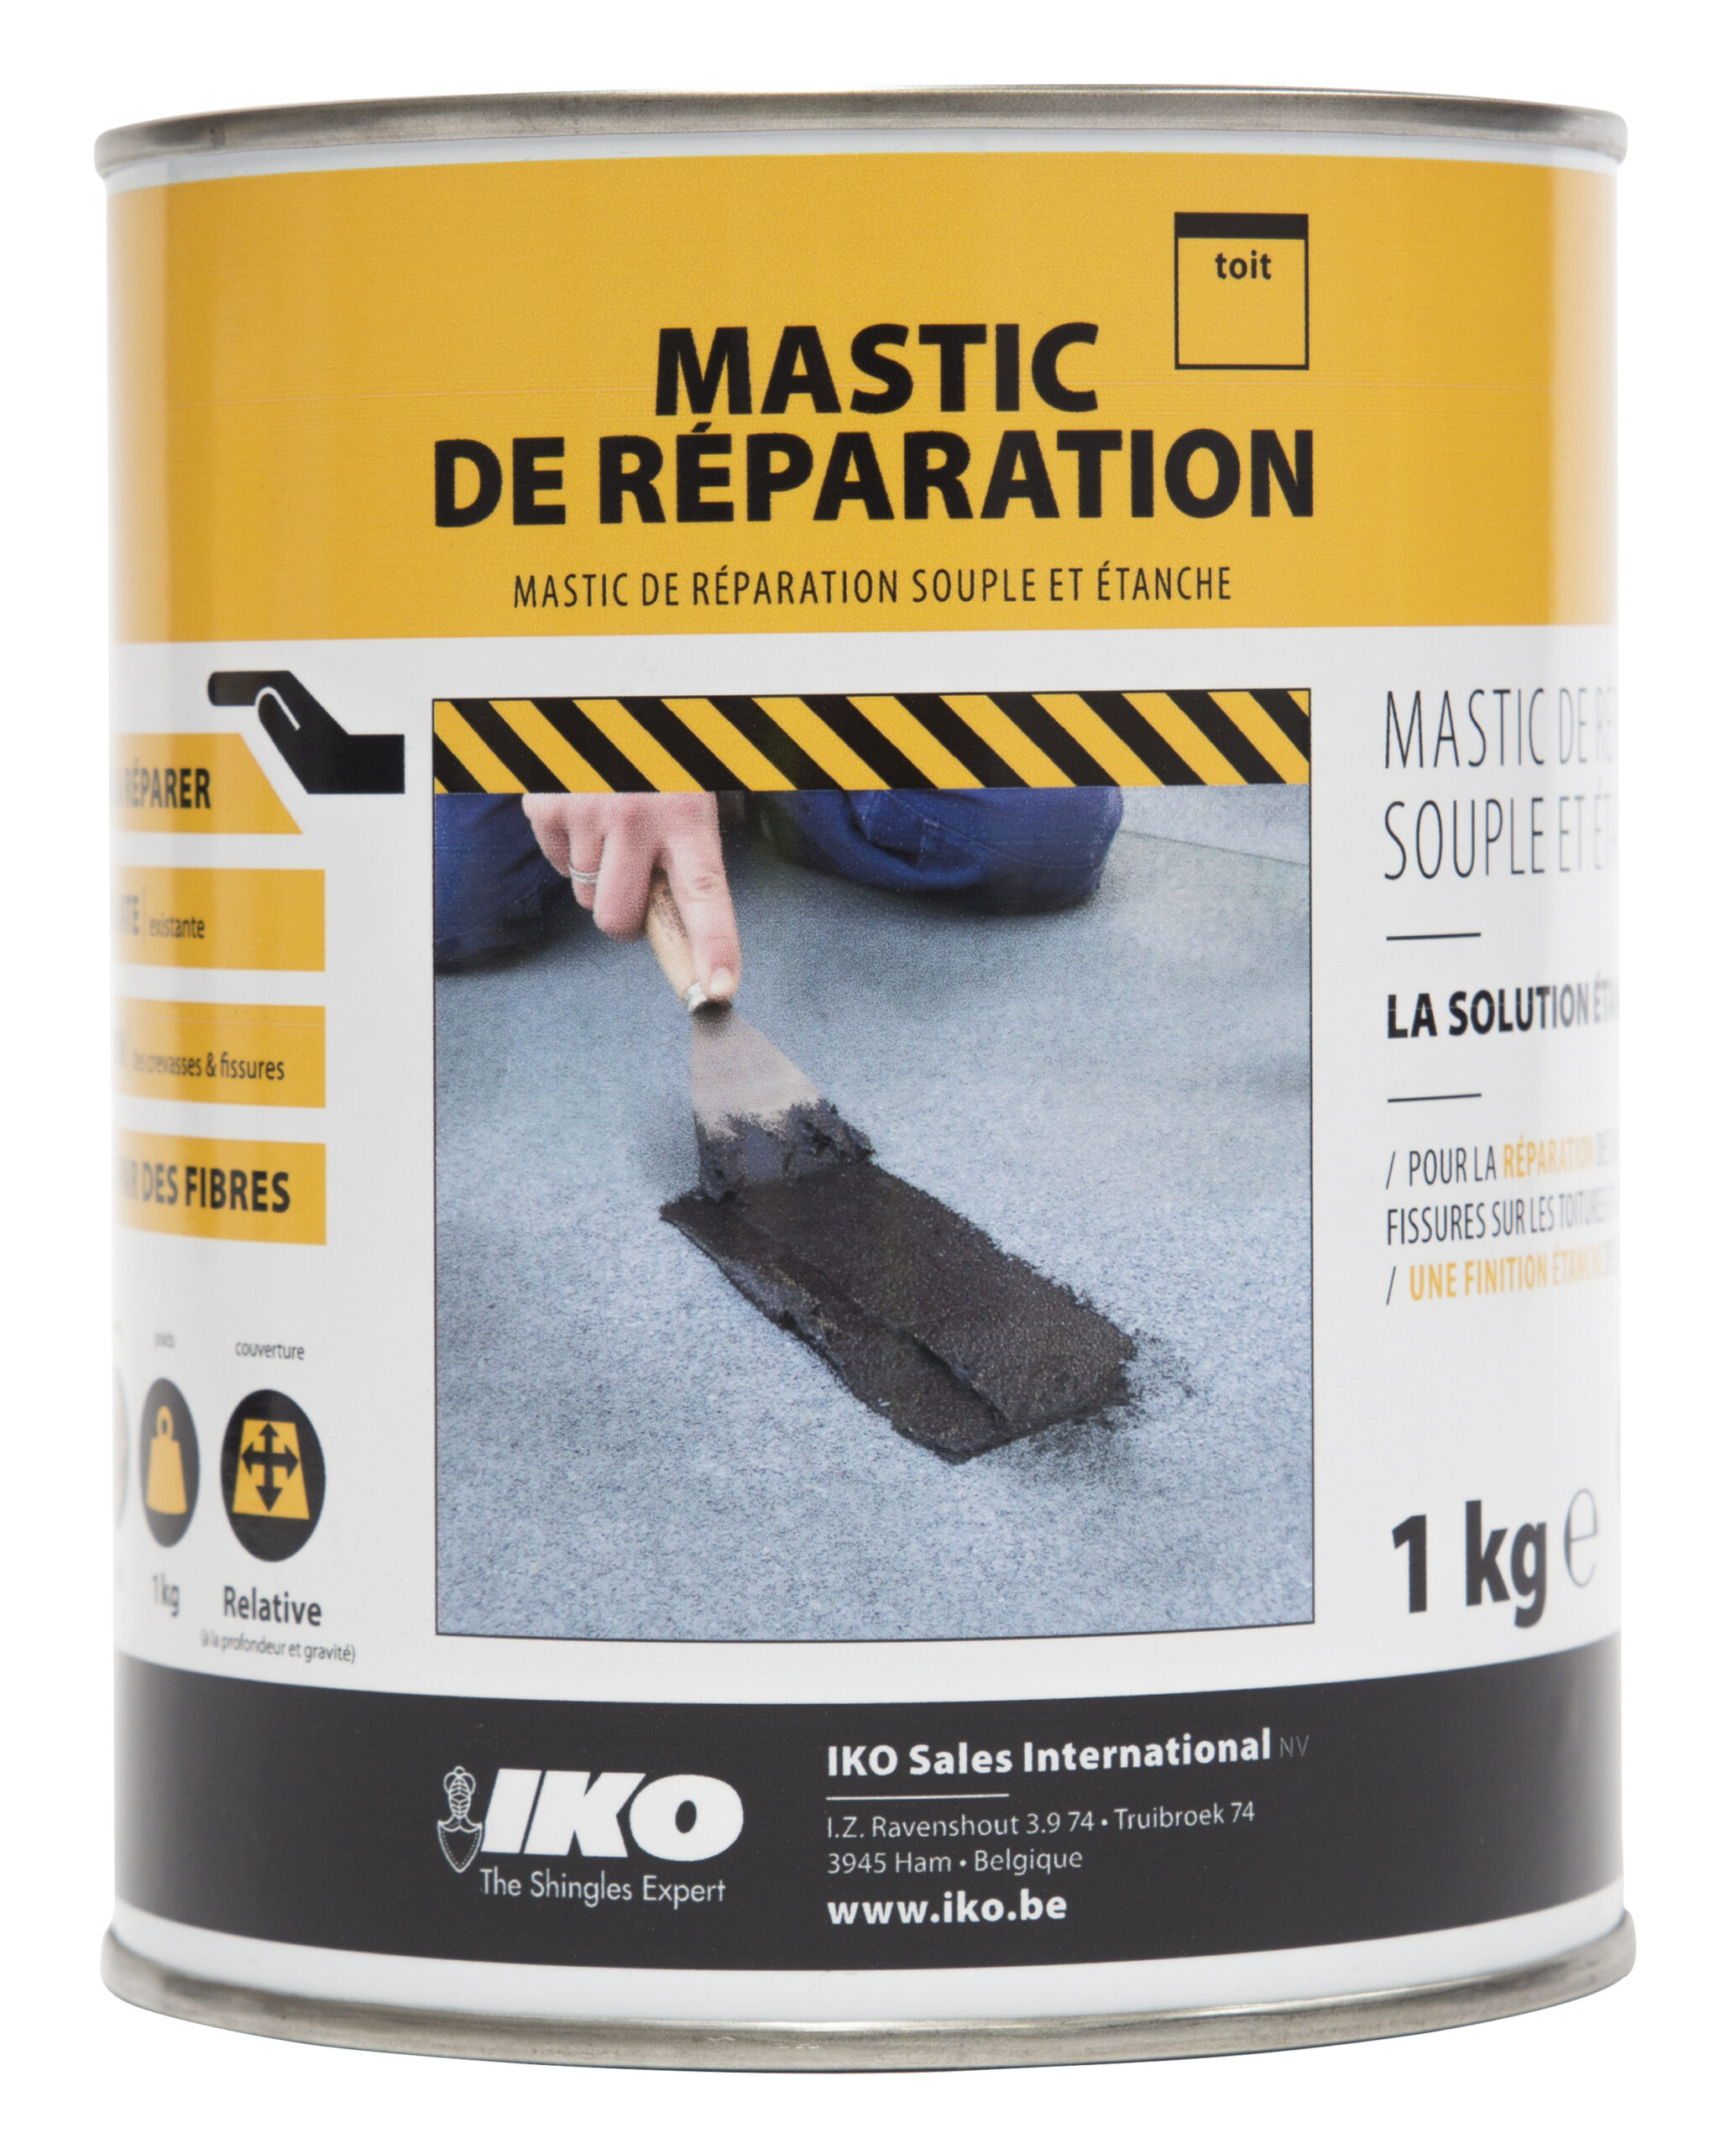 Mastic de réparation Easy-Protect noir pour réparation toiture existante